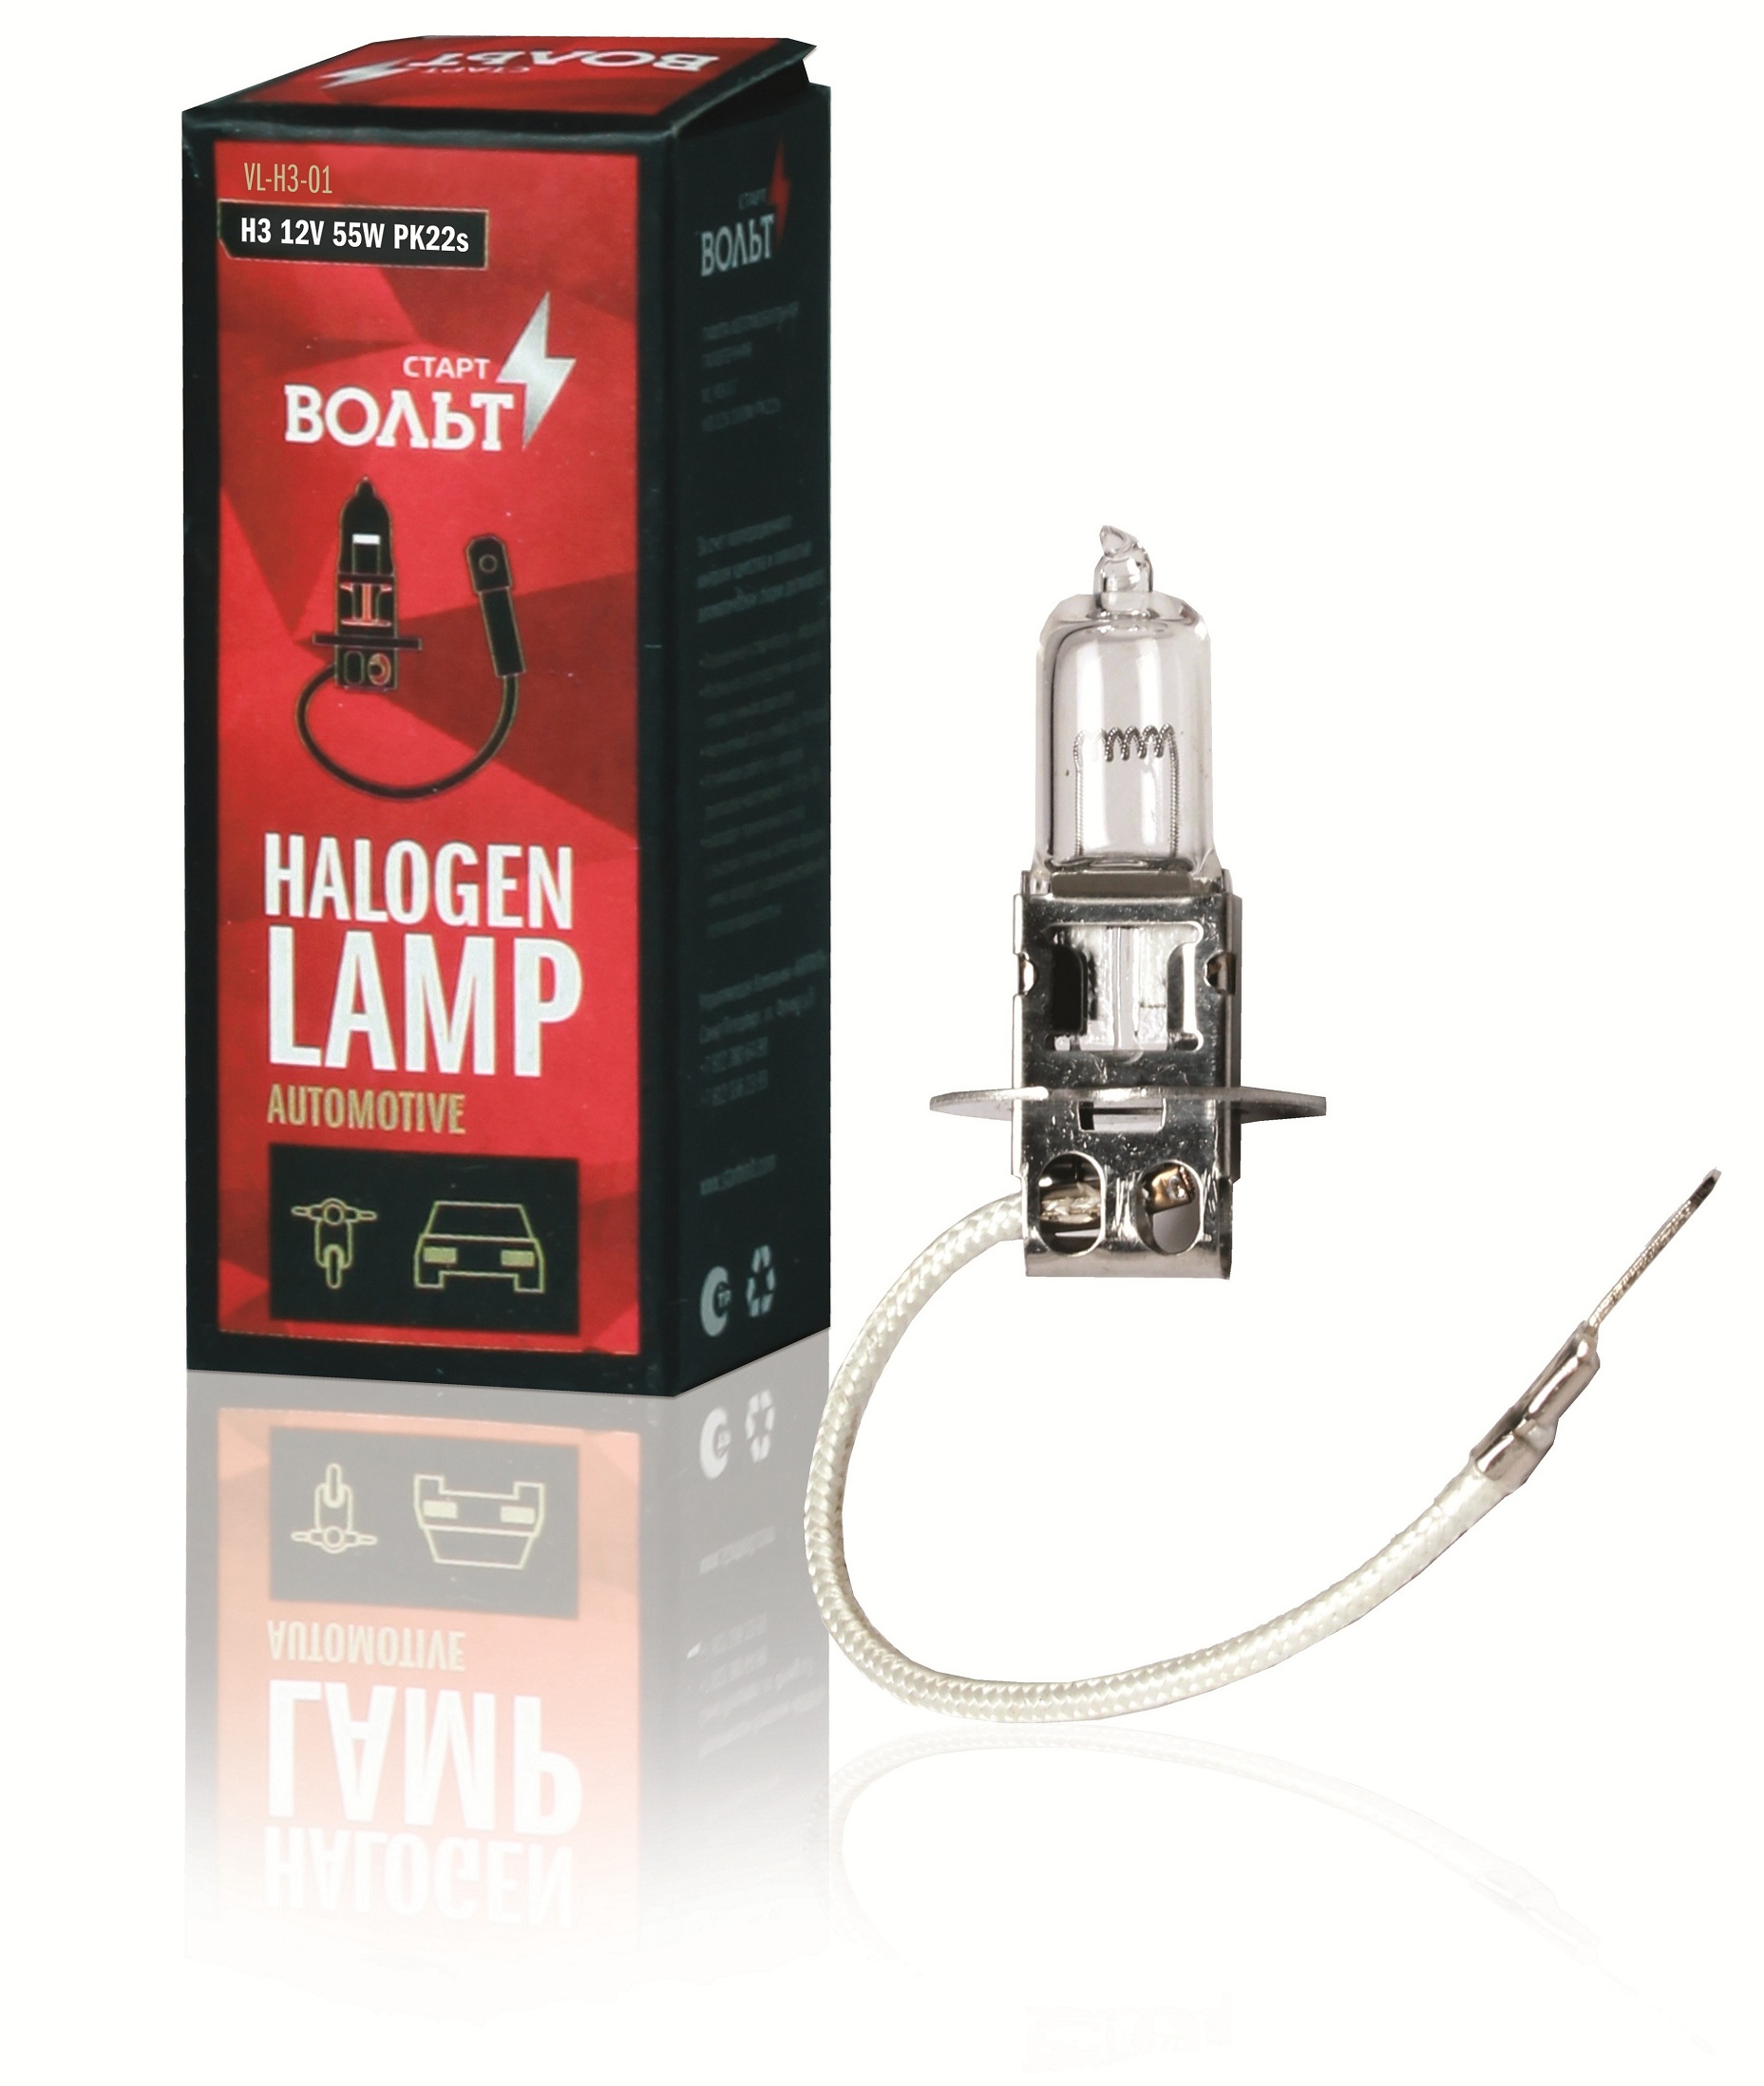 Лампа галогенная H3 12V 55W PK22S (VL-H3-01)